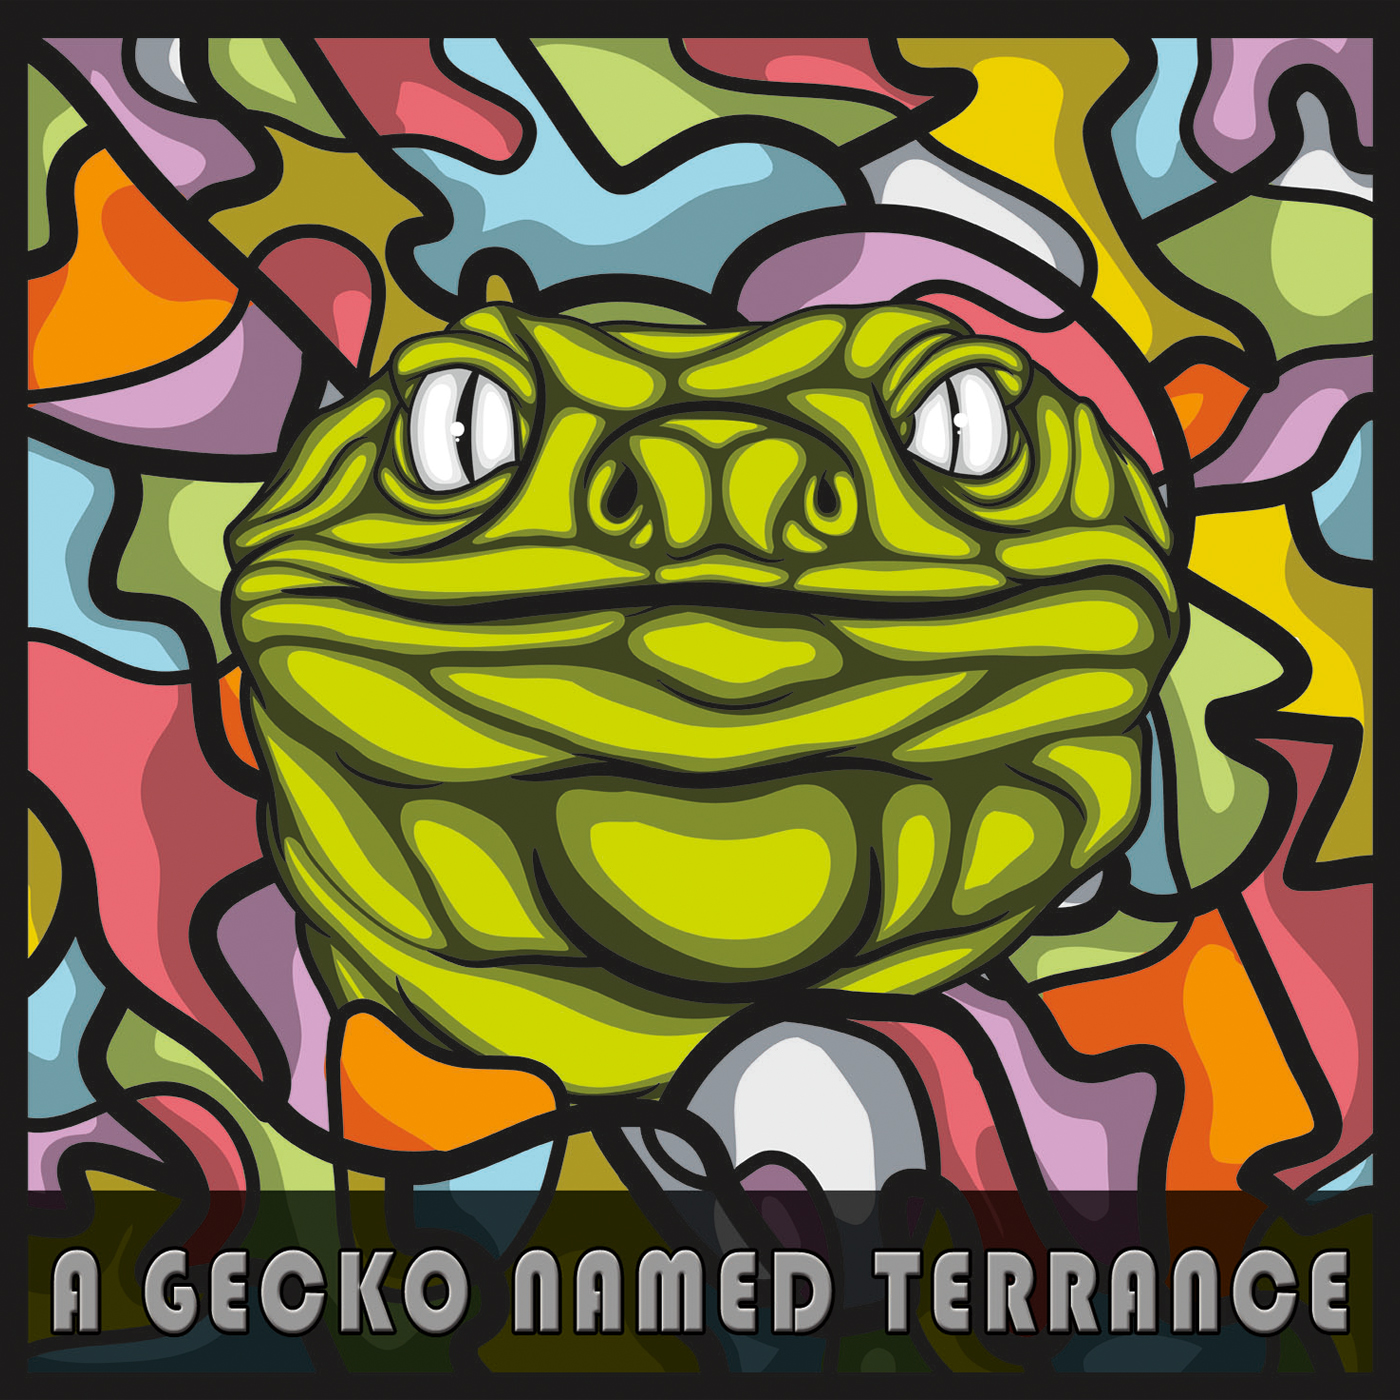 A Gecko Named Terrance